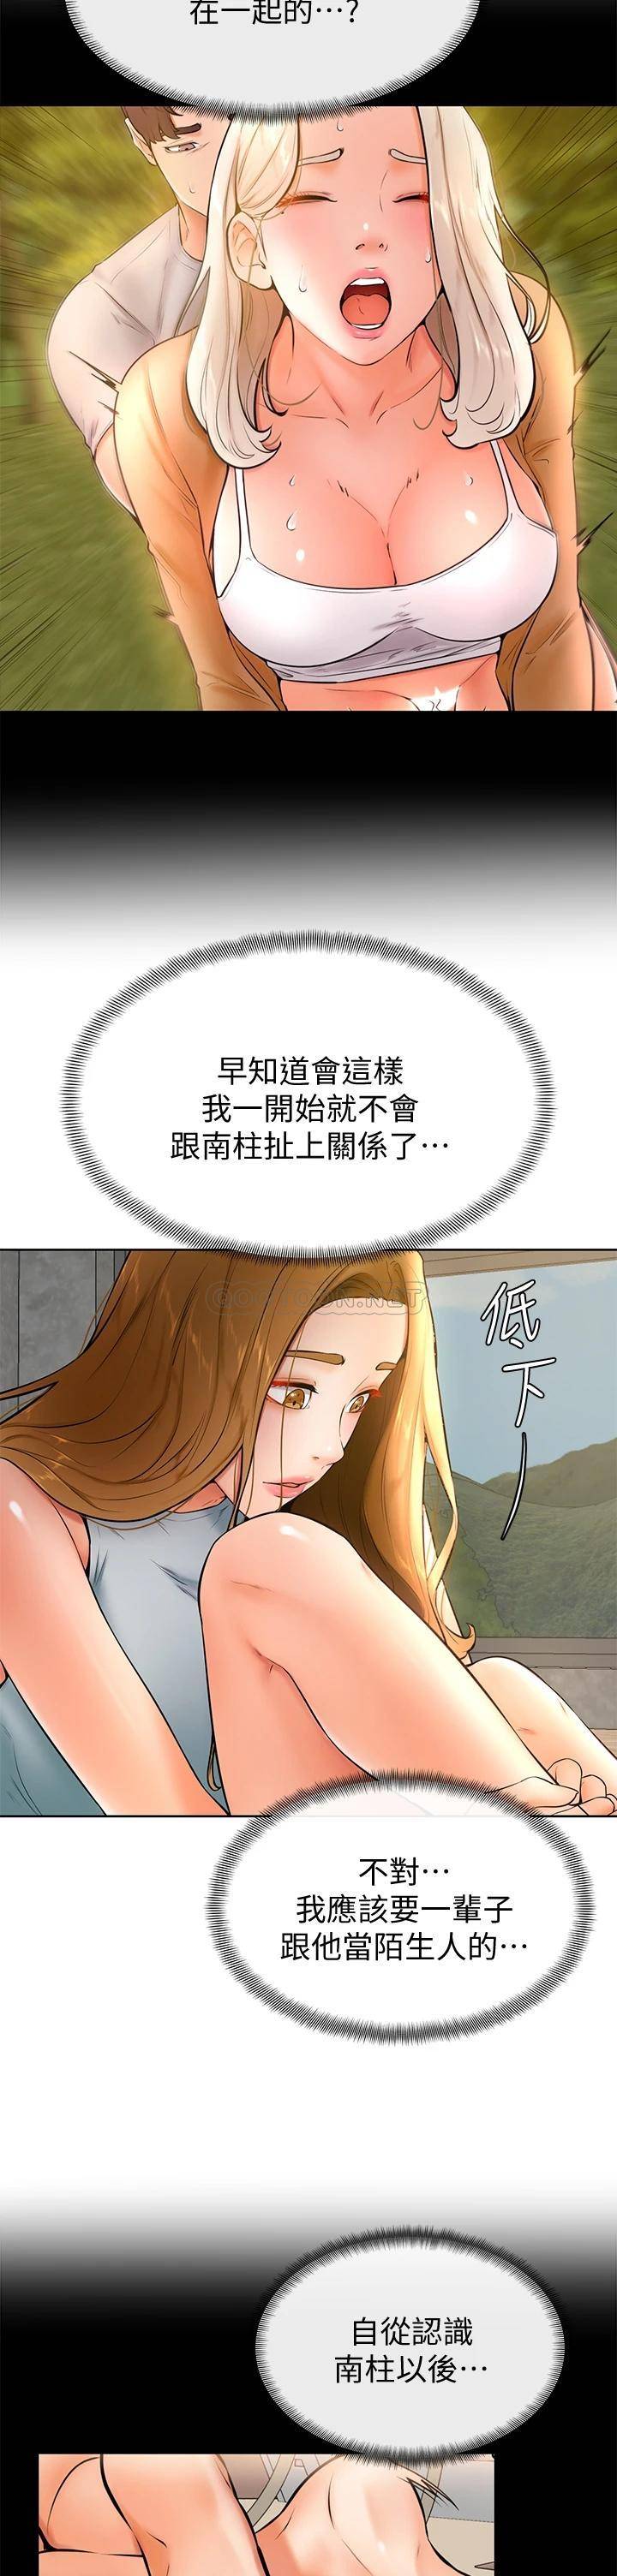 韩国污漫画 學弟,甘巴爹捏! 第23话因兴奋而逐渐湿漉的私处 27